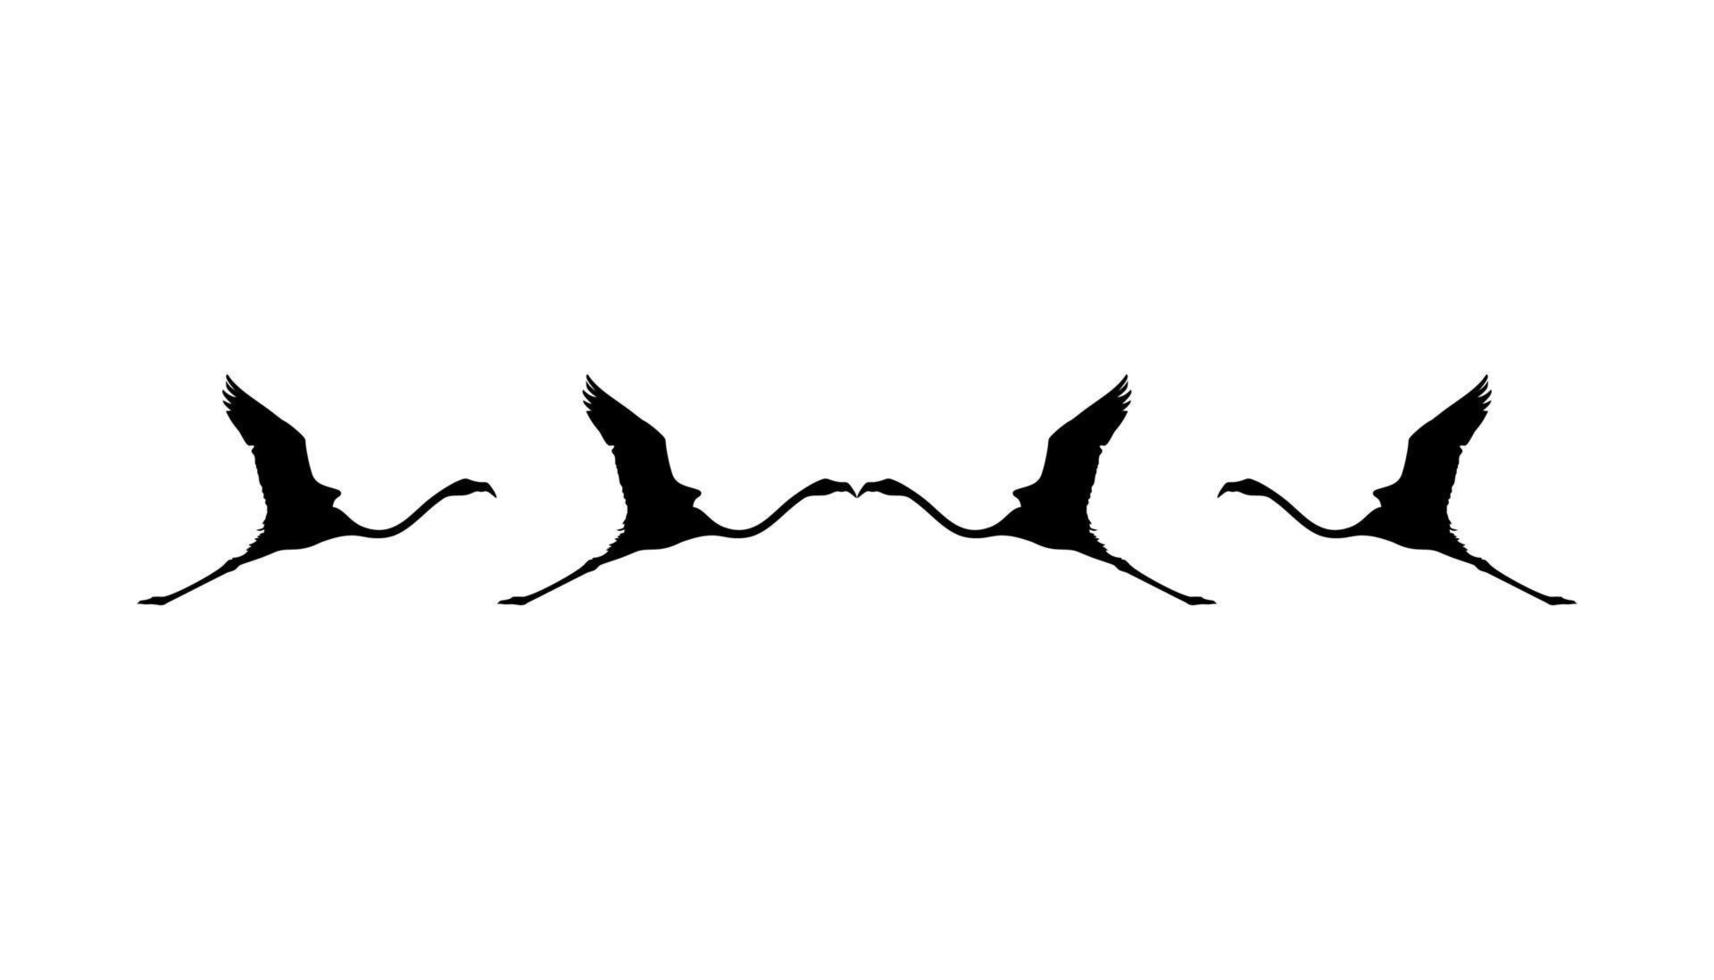 kudde van de vliegend flamingo silhouet voor icoon, symbool, logo, kunst illustratie, pictogram, website, of grafisch ontwerp element. vector illustratie